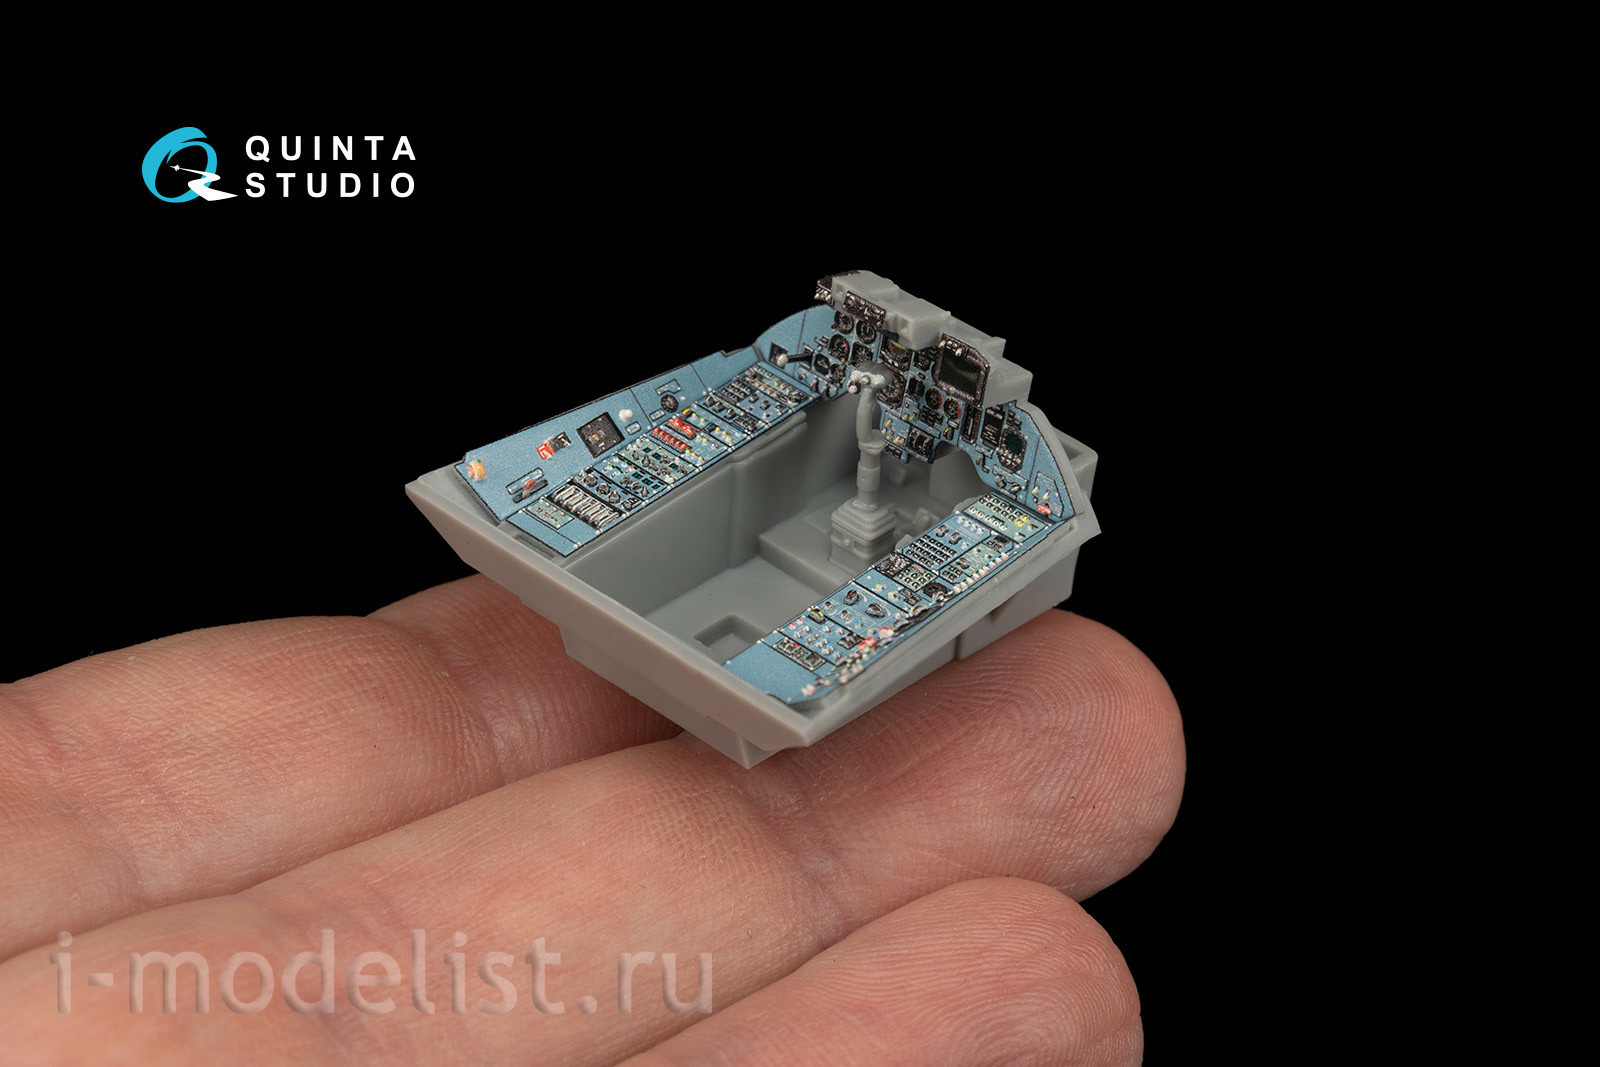 QD48173 Quinta Studio 1/48 3D Декаль интерьера кабины Суххой-33 (для модели Minibase)